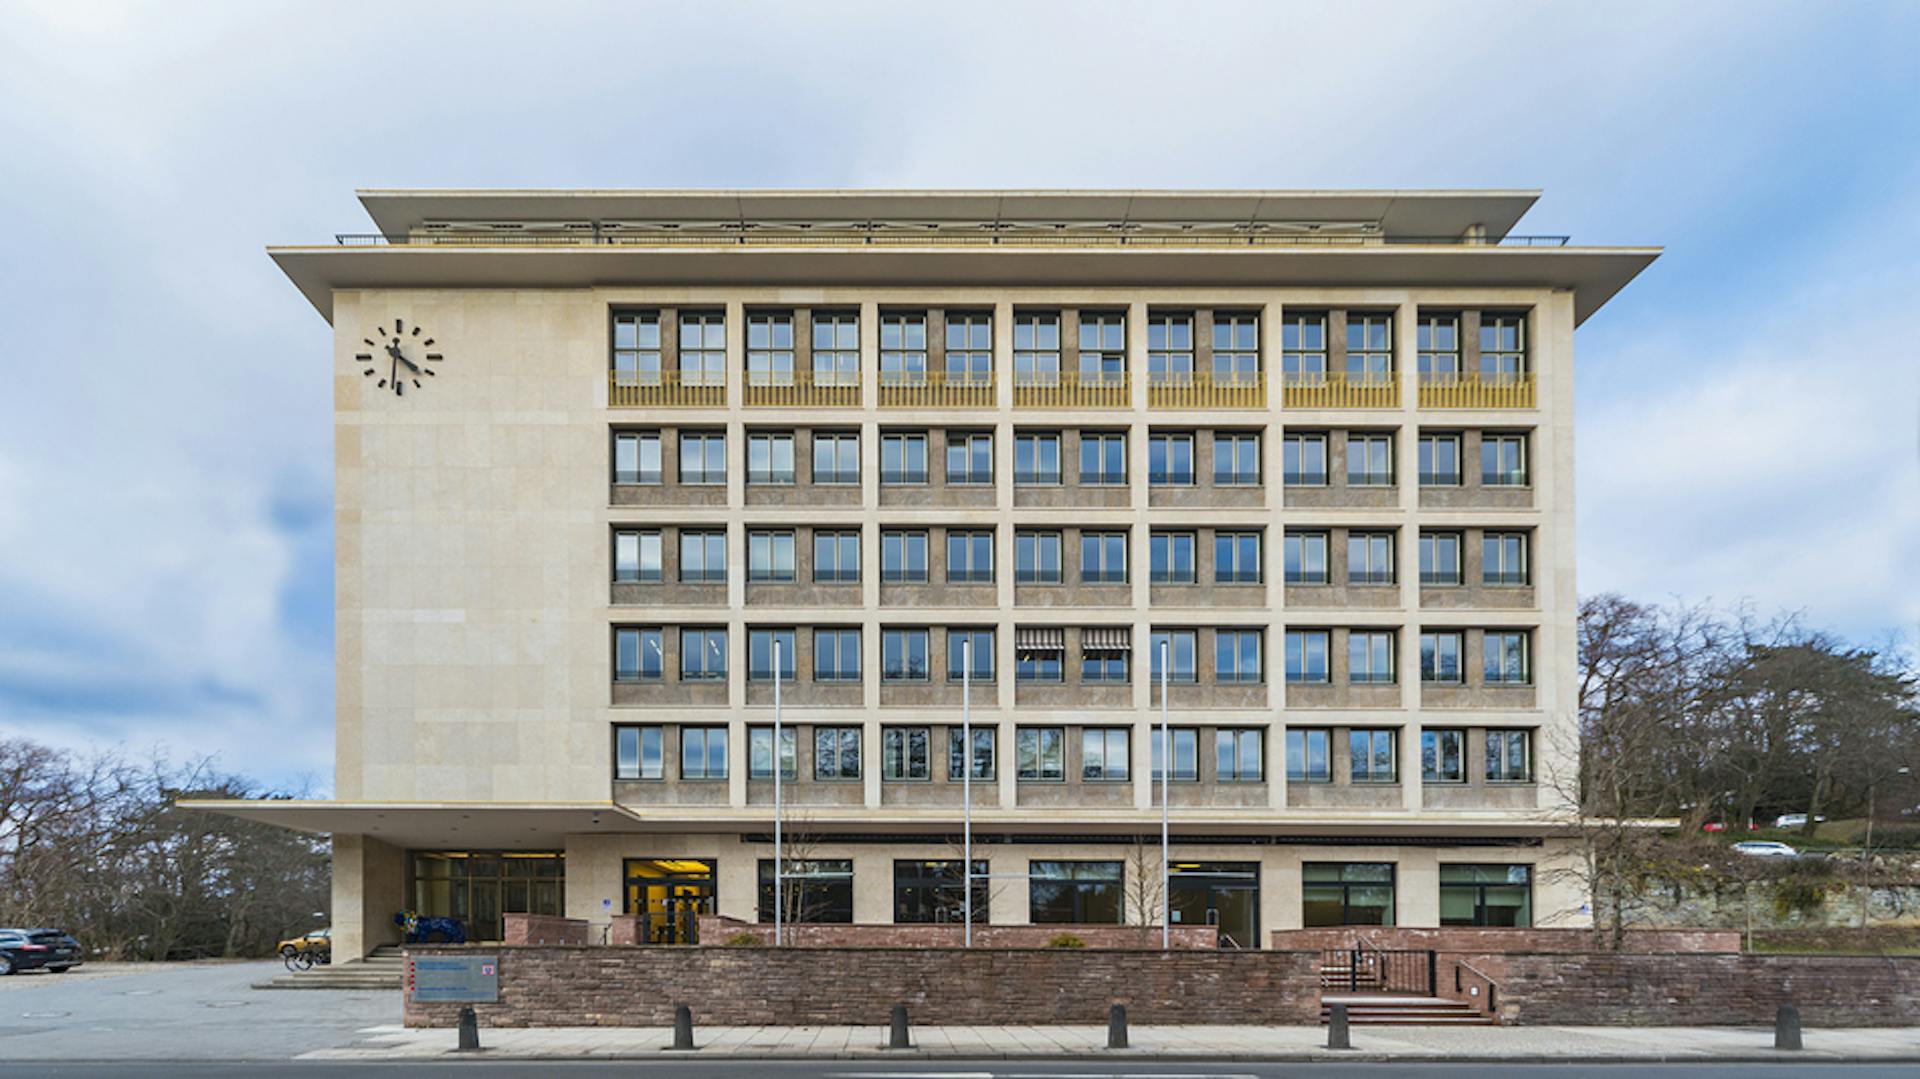 Hessisches Ministerium für Soziales und Integration, Wiesbaden